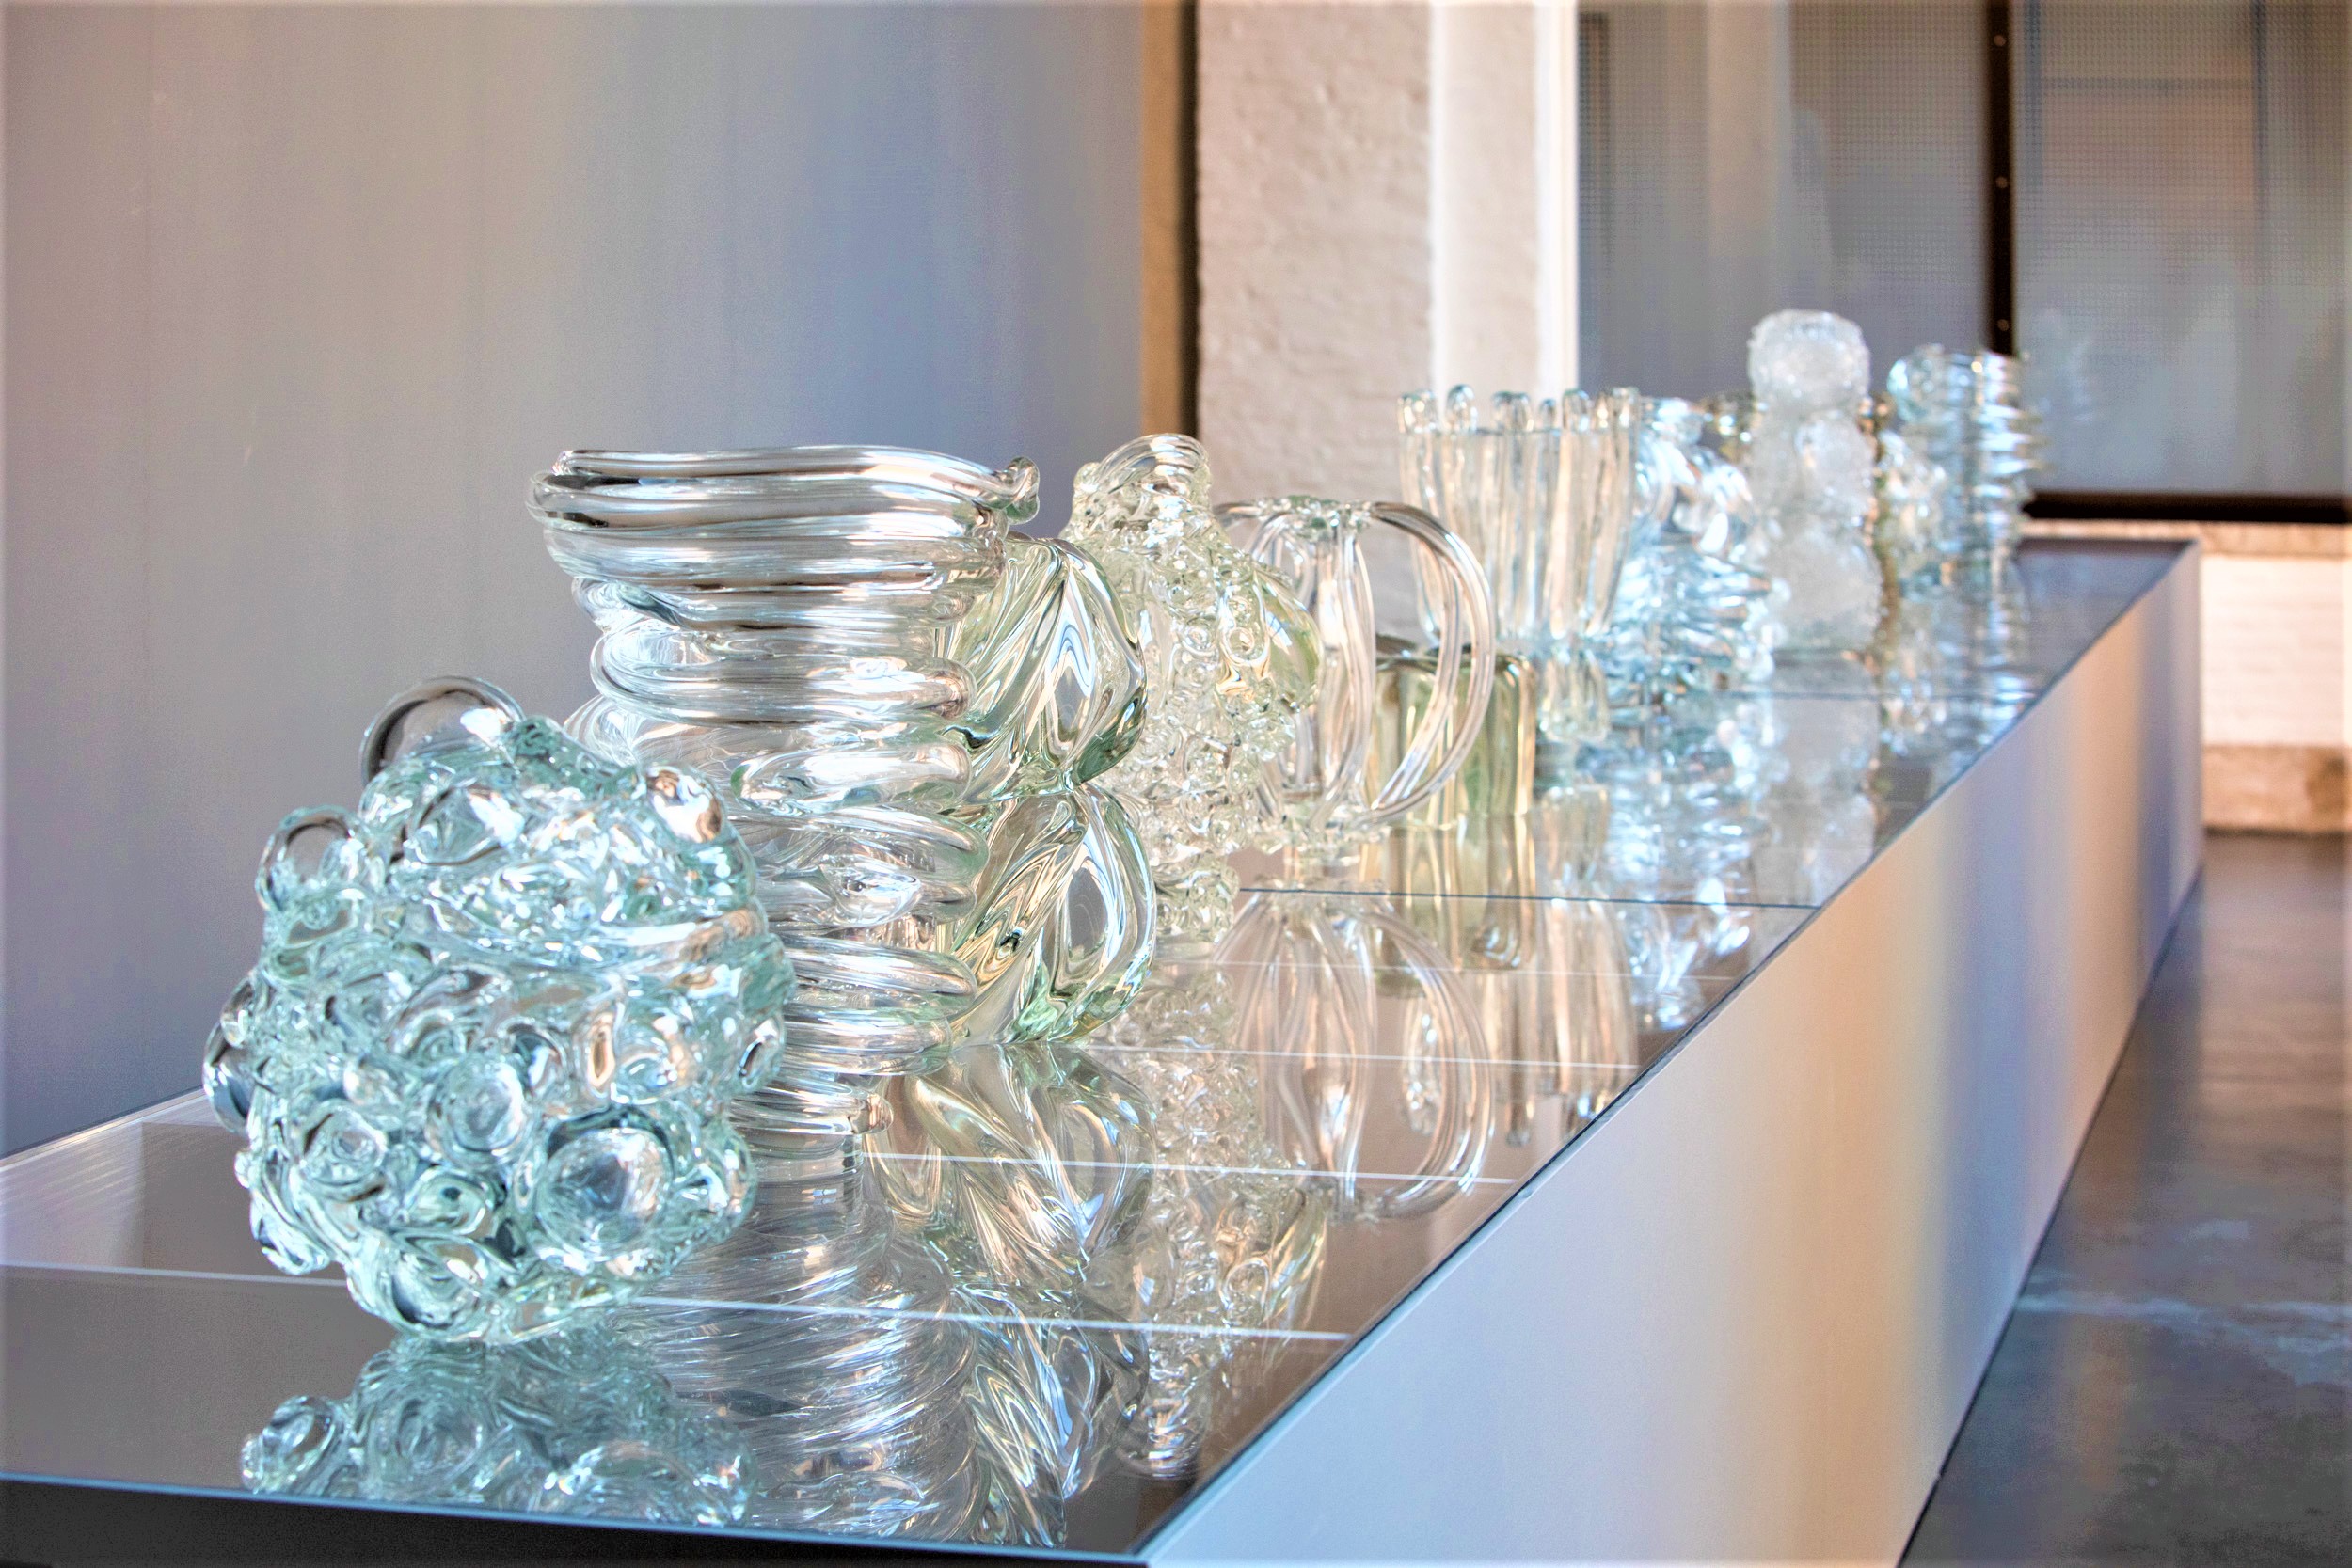 Ritsue Mishima, Glass Works, Gallerie dell’Accademia di Venezia. Ph. Massimo Pistore